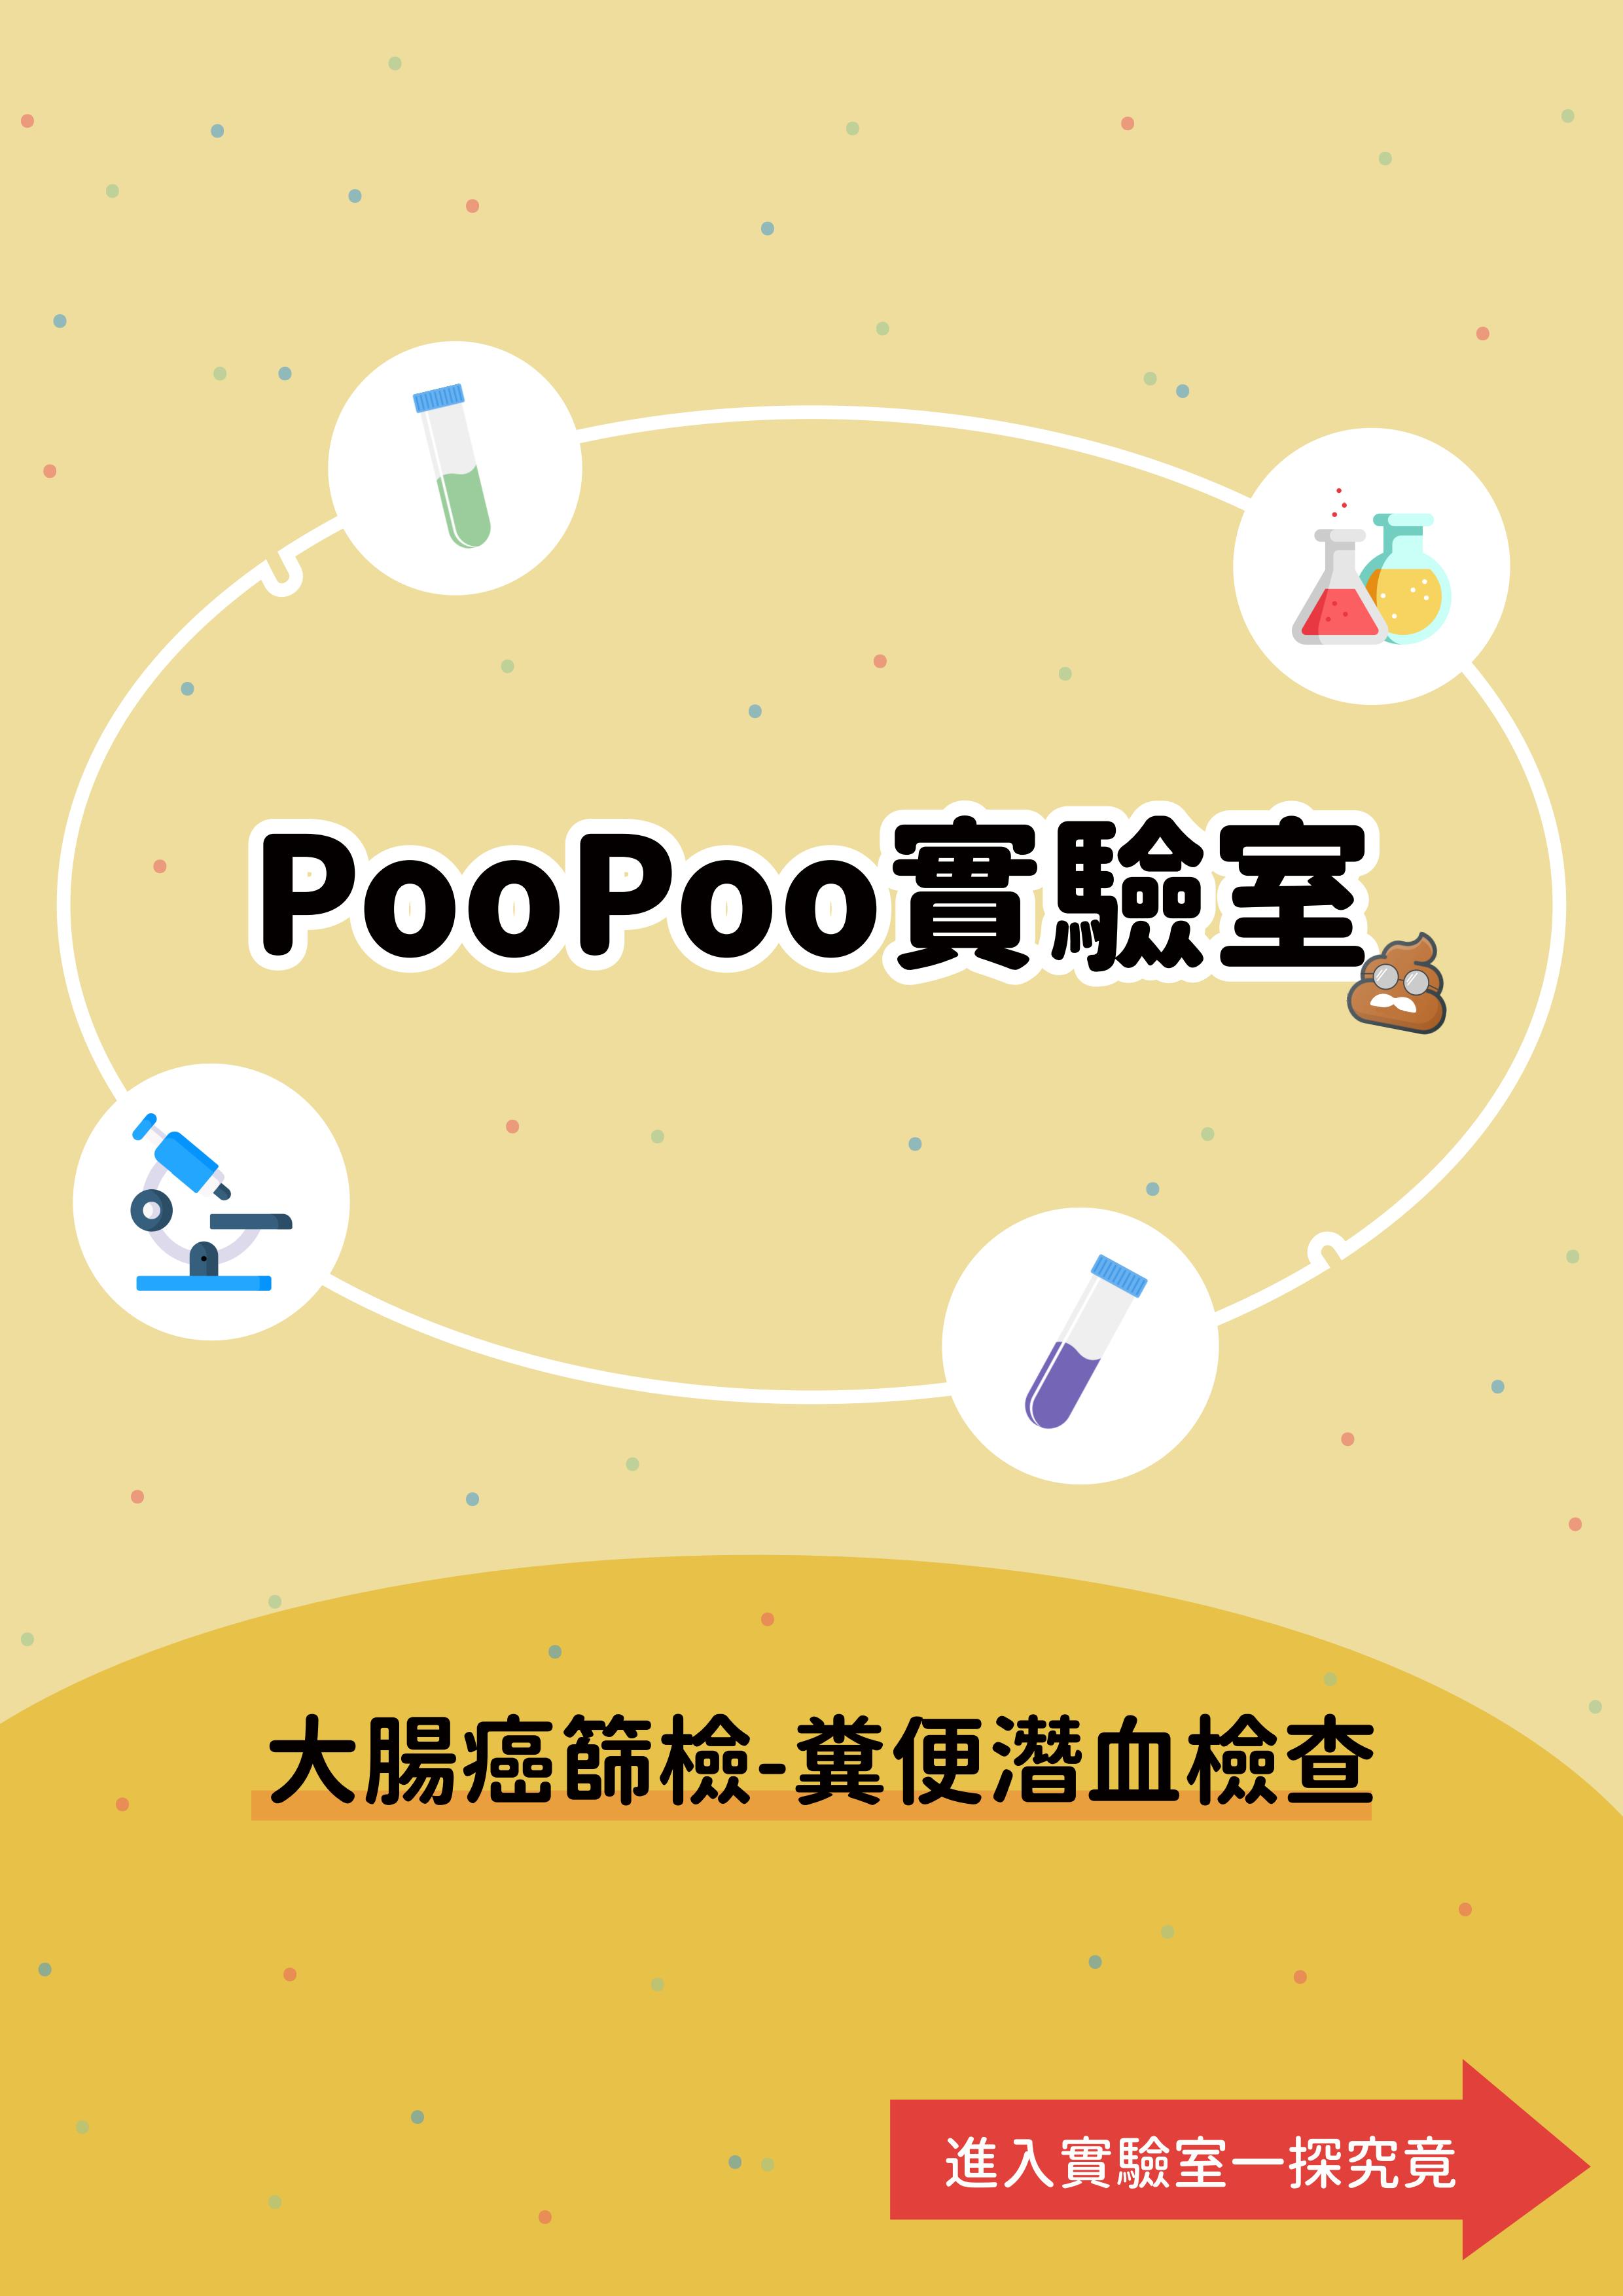 PooPoo實驗室-大腸癌篩檢